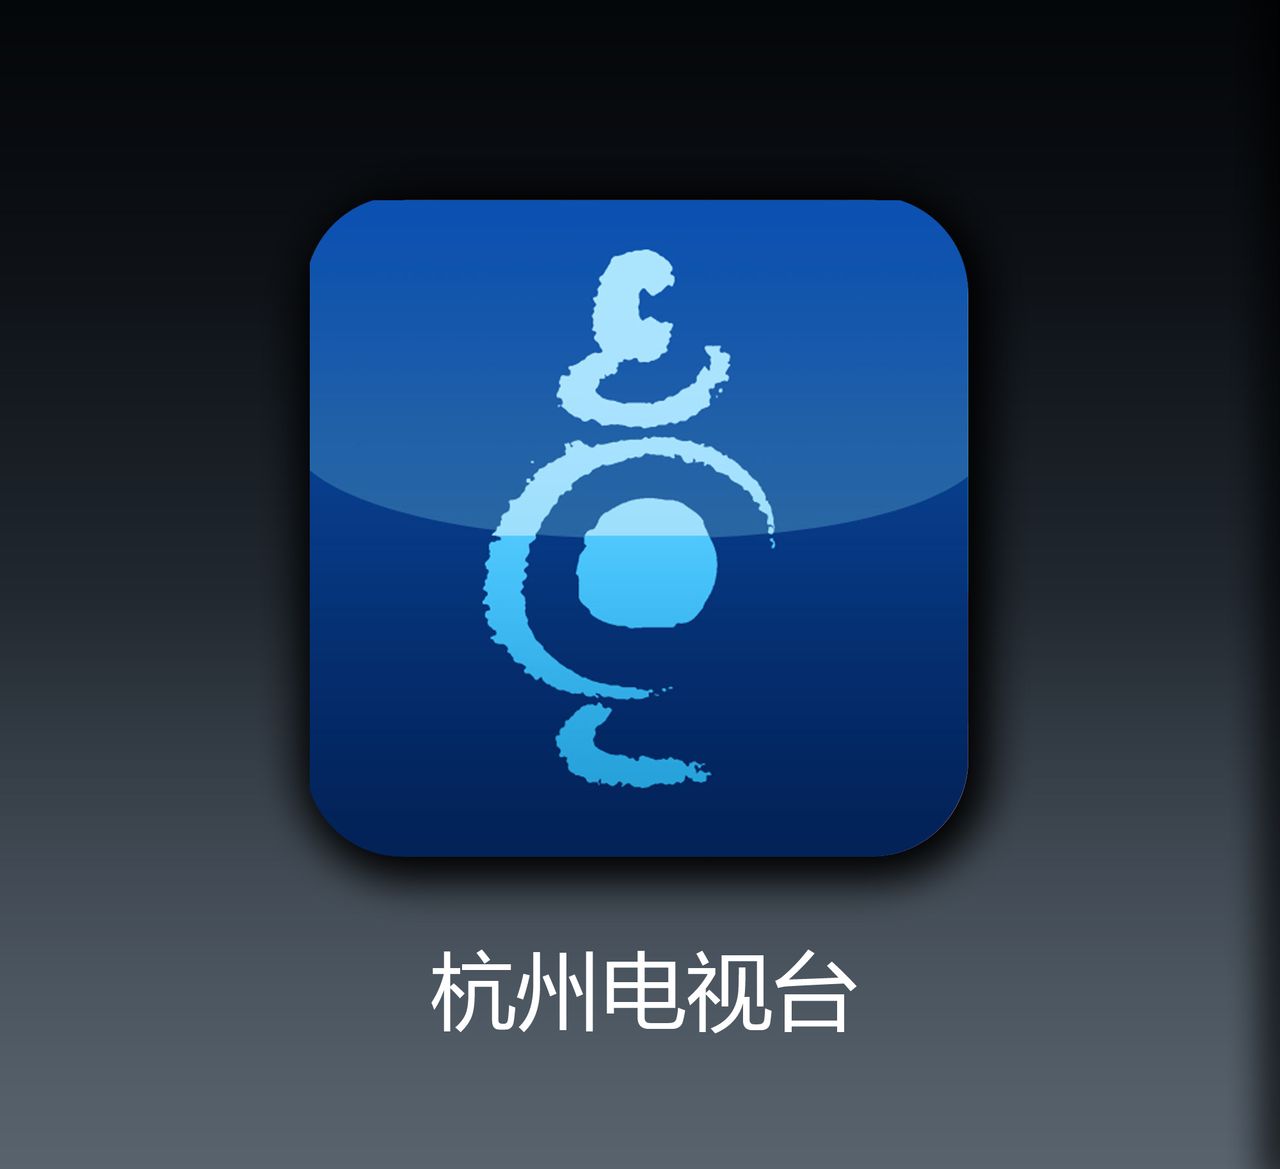 杭州電視台客戶端Logo